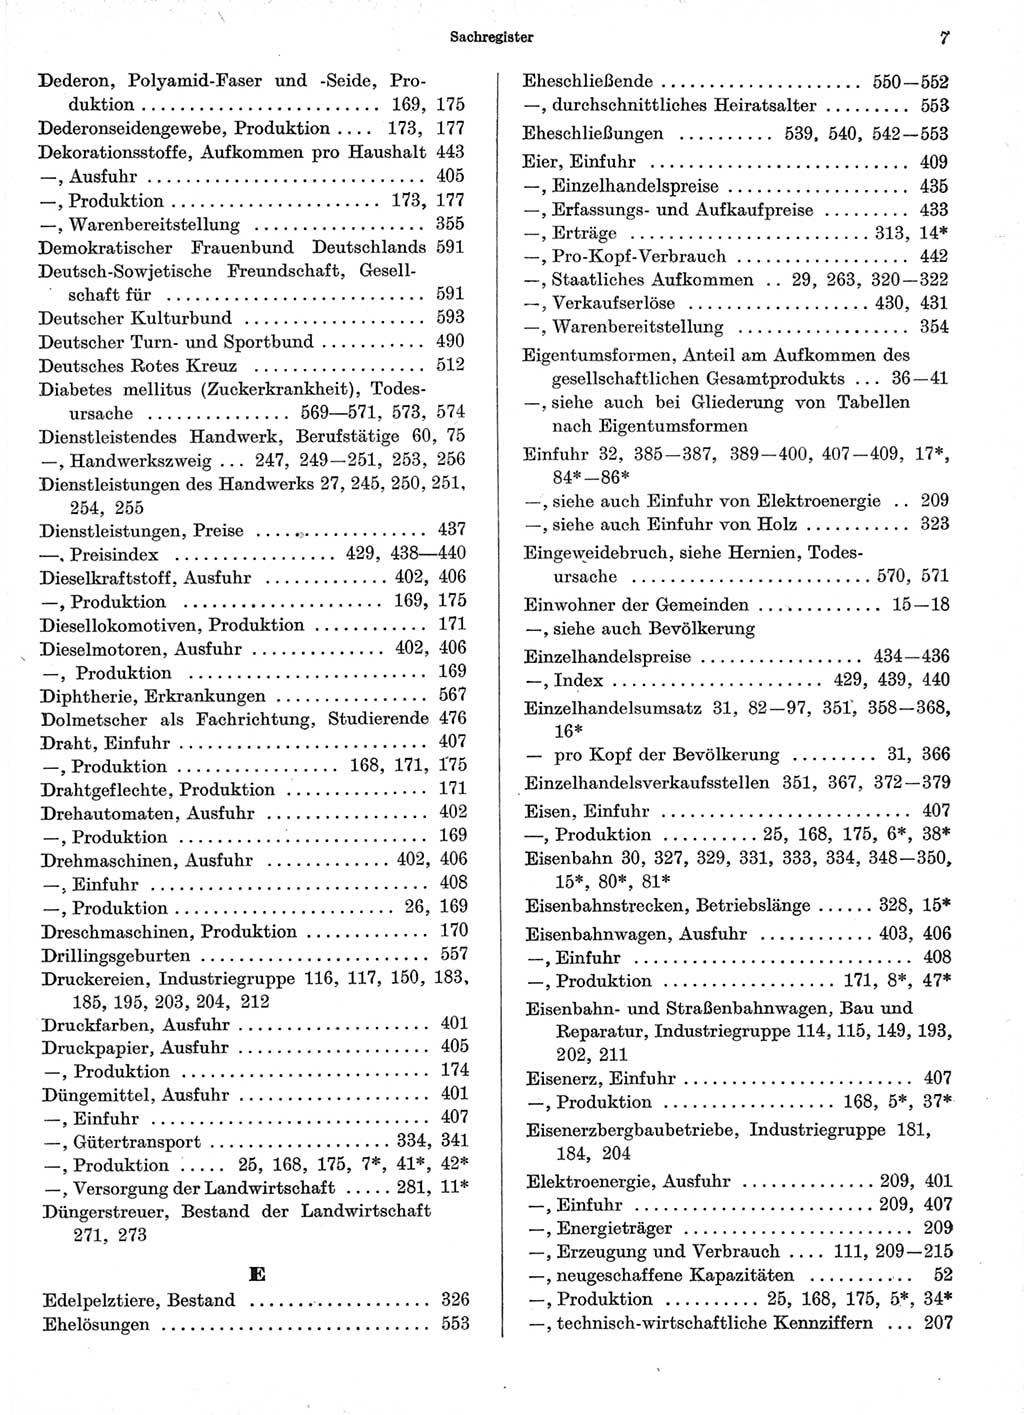 Statistisches Jahrbuch der Deutschen Demokratischen Republik (DDR) 1966, Seite 7 (Stat. Jb. DDR 1966, S. 7)